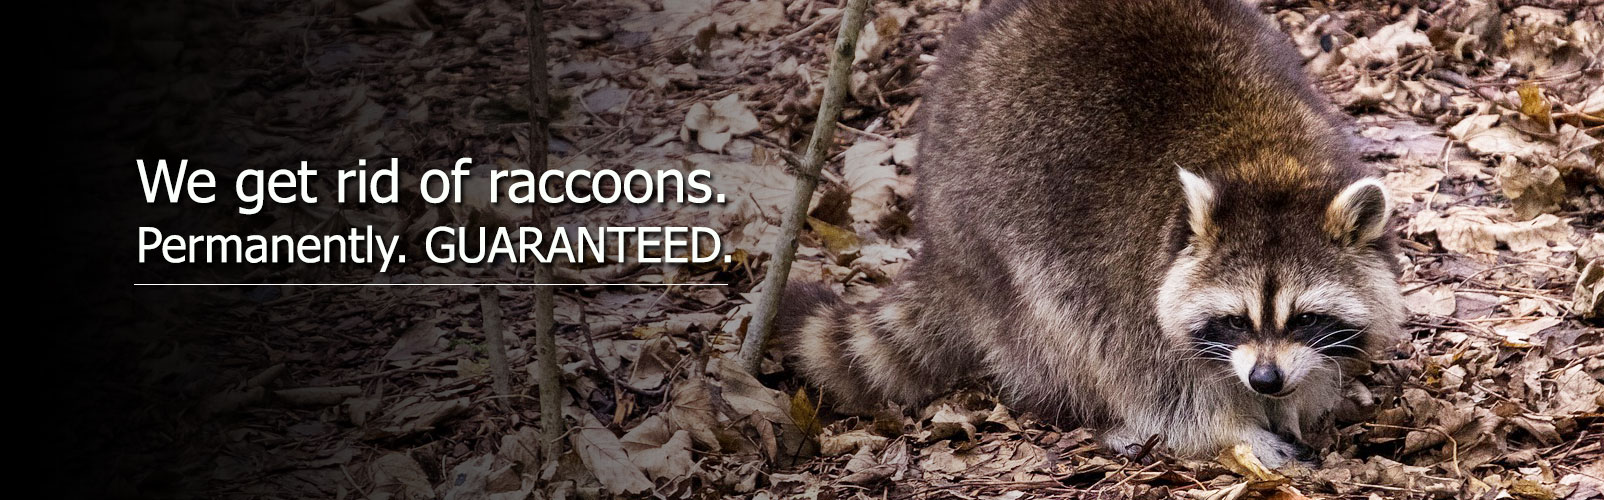 raccoon control removal hamilton